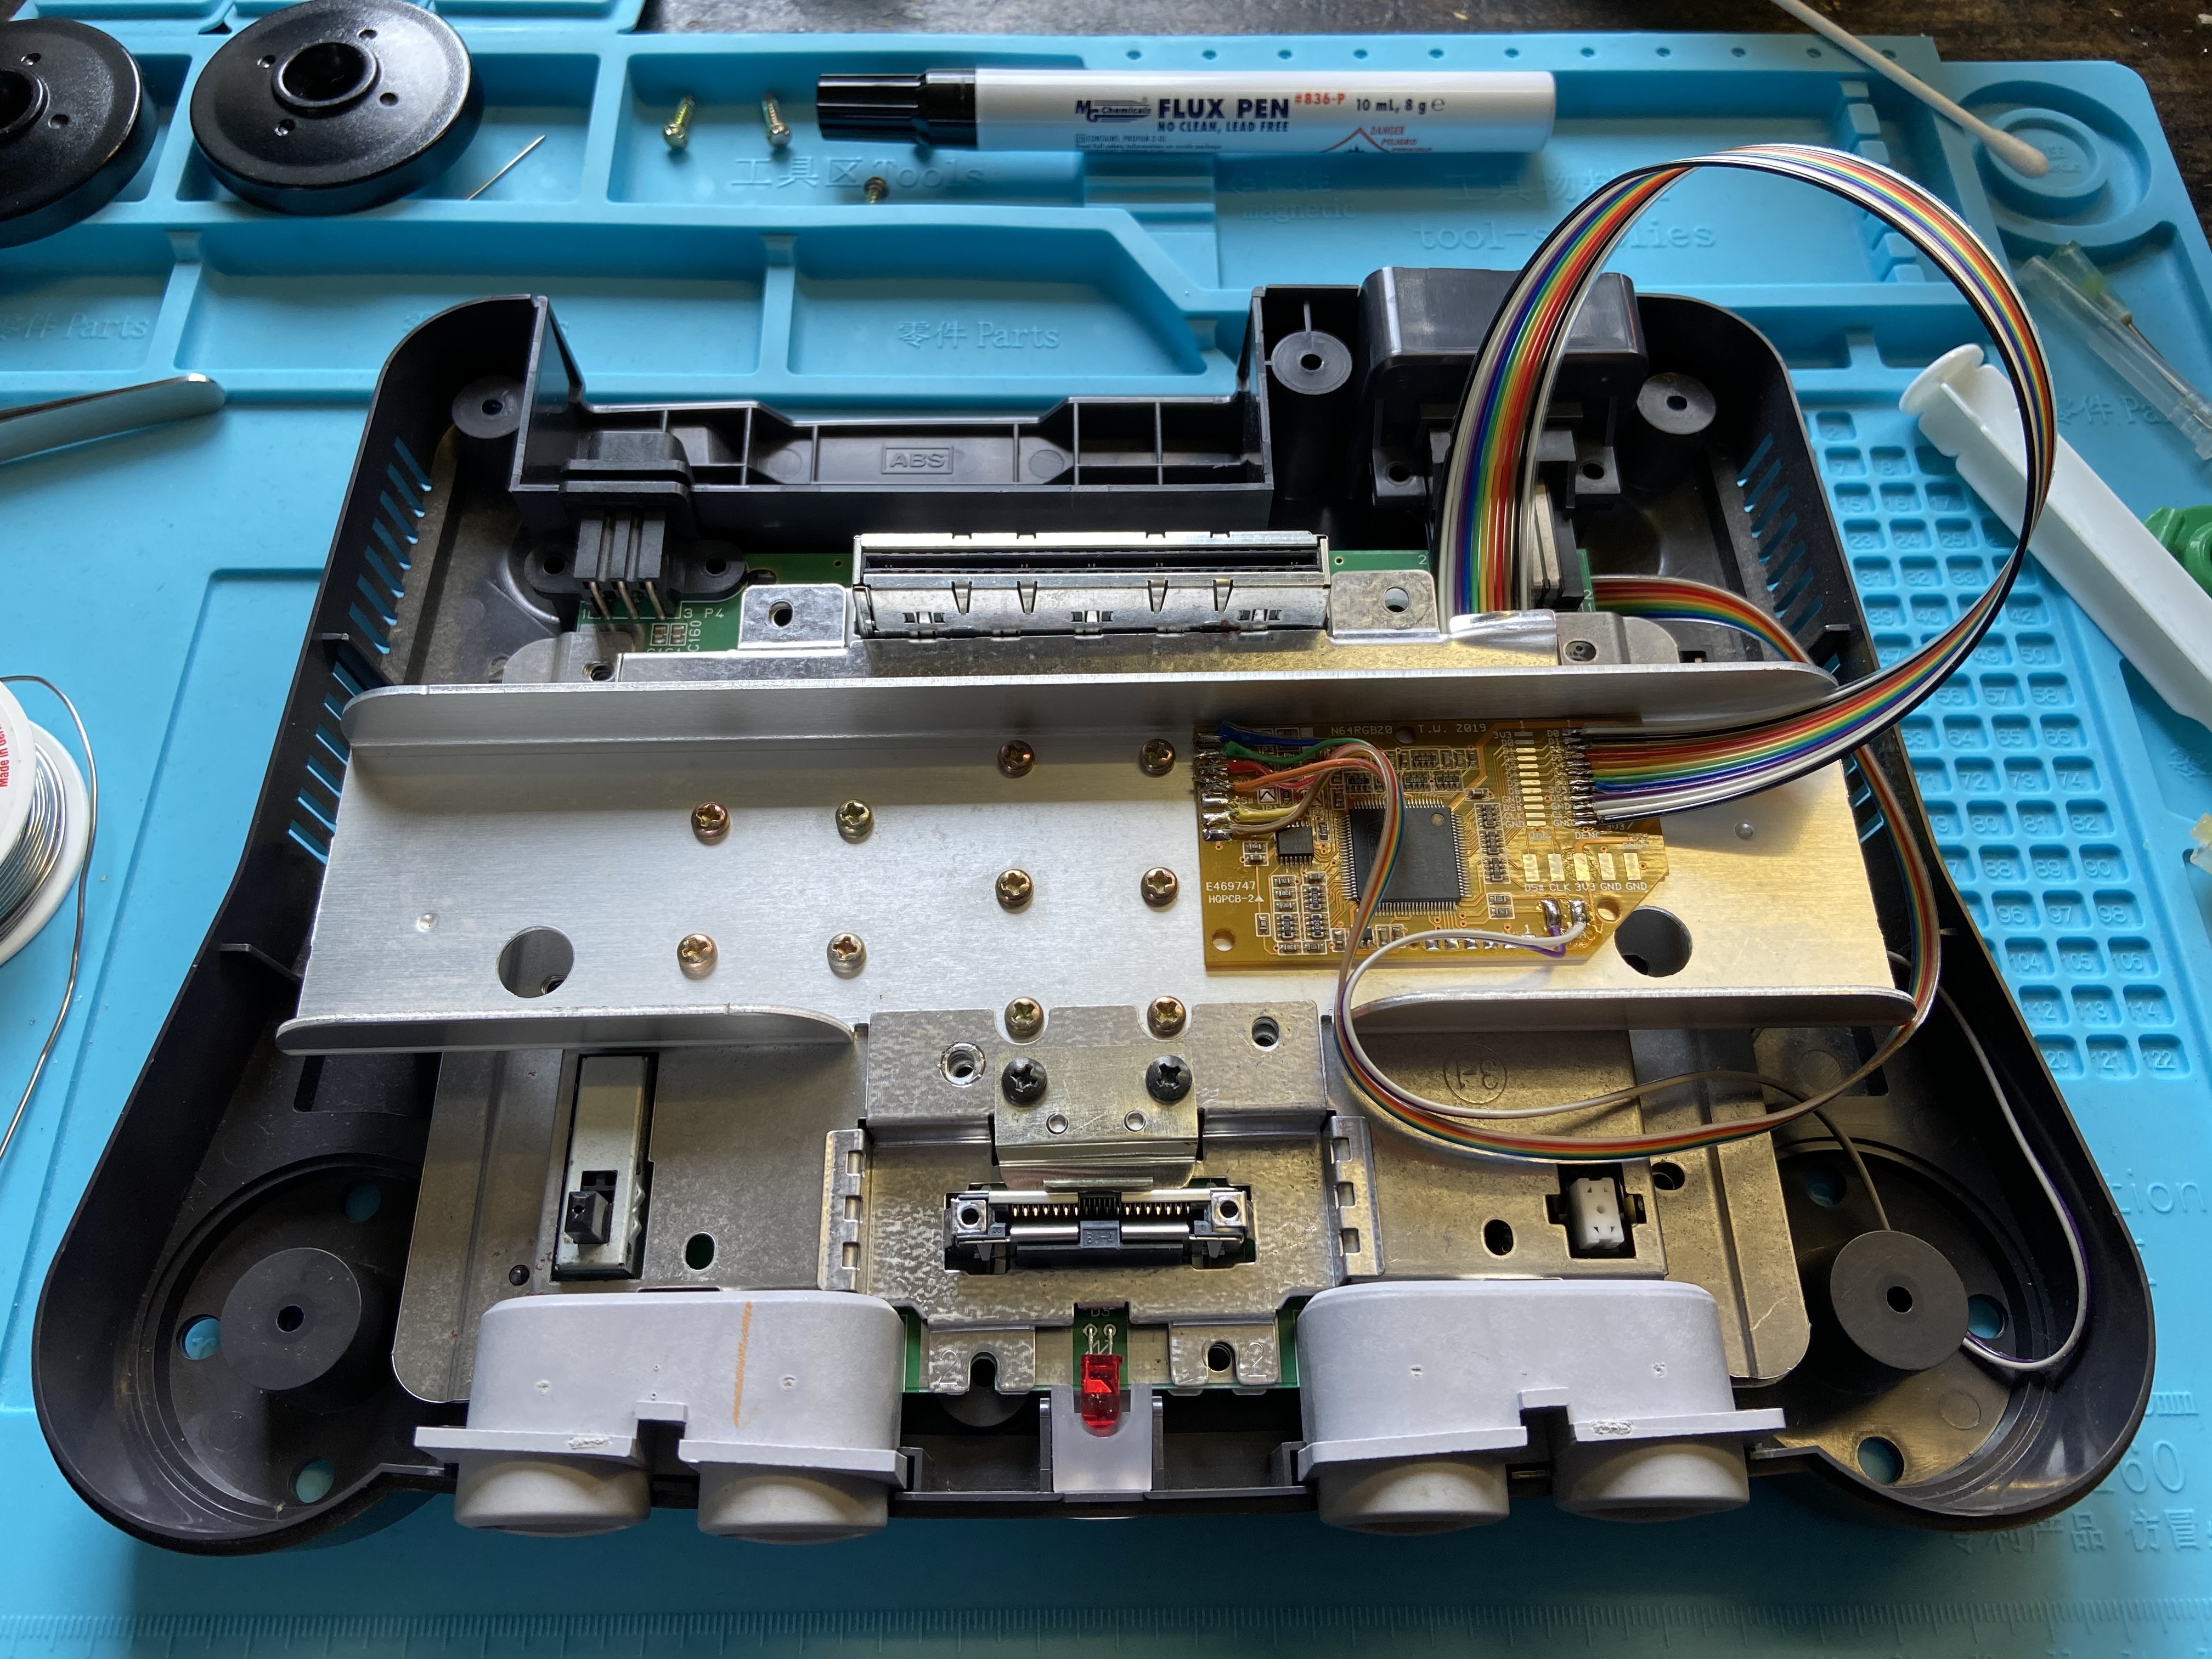 Tim Worthington Nintendo 64 RGB kit installed and ready to test